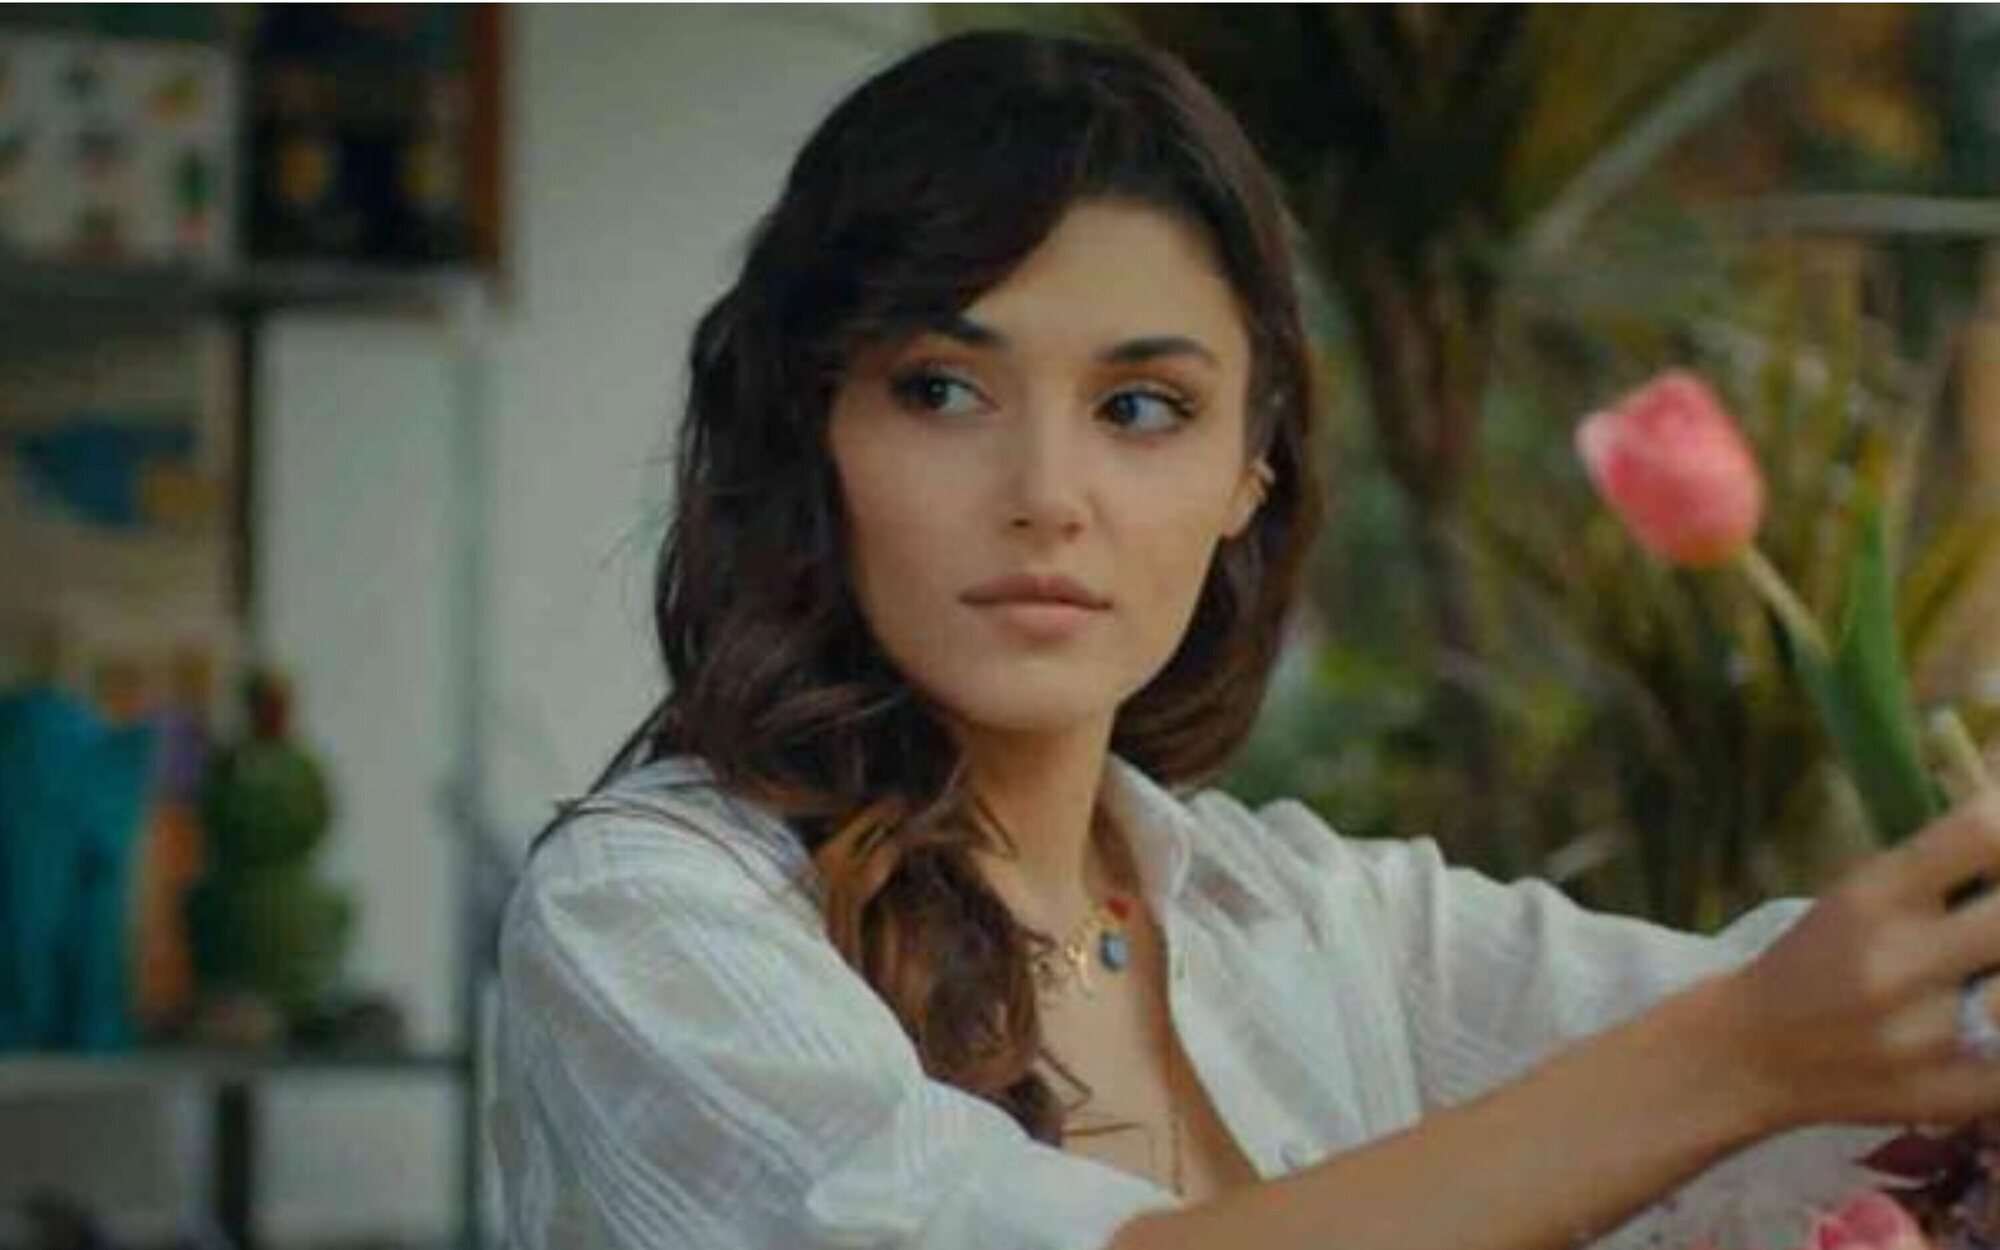 Hande Erçel ('Love is in the air') decide tomarse un descanso tras el final de la serie